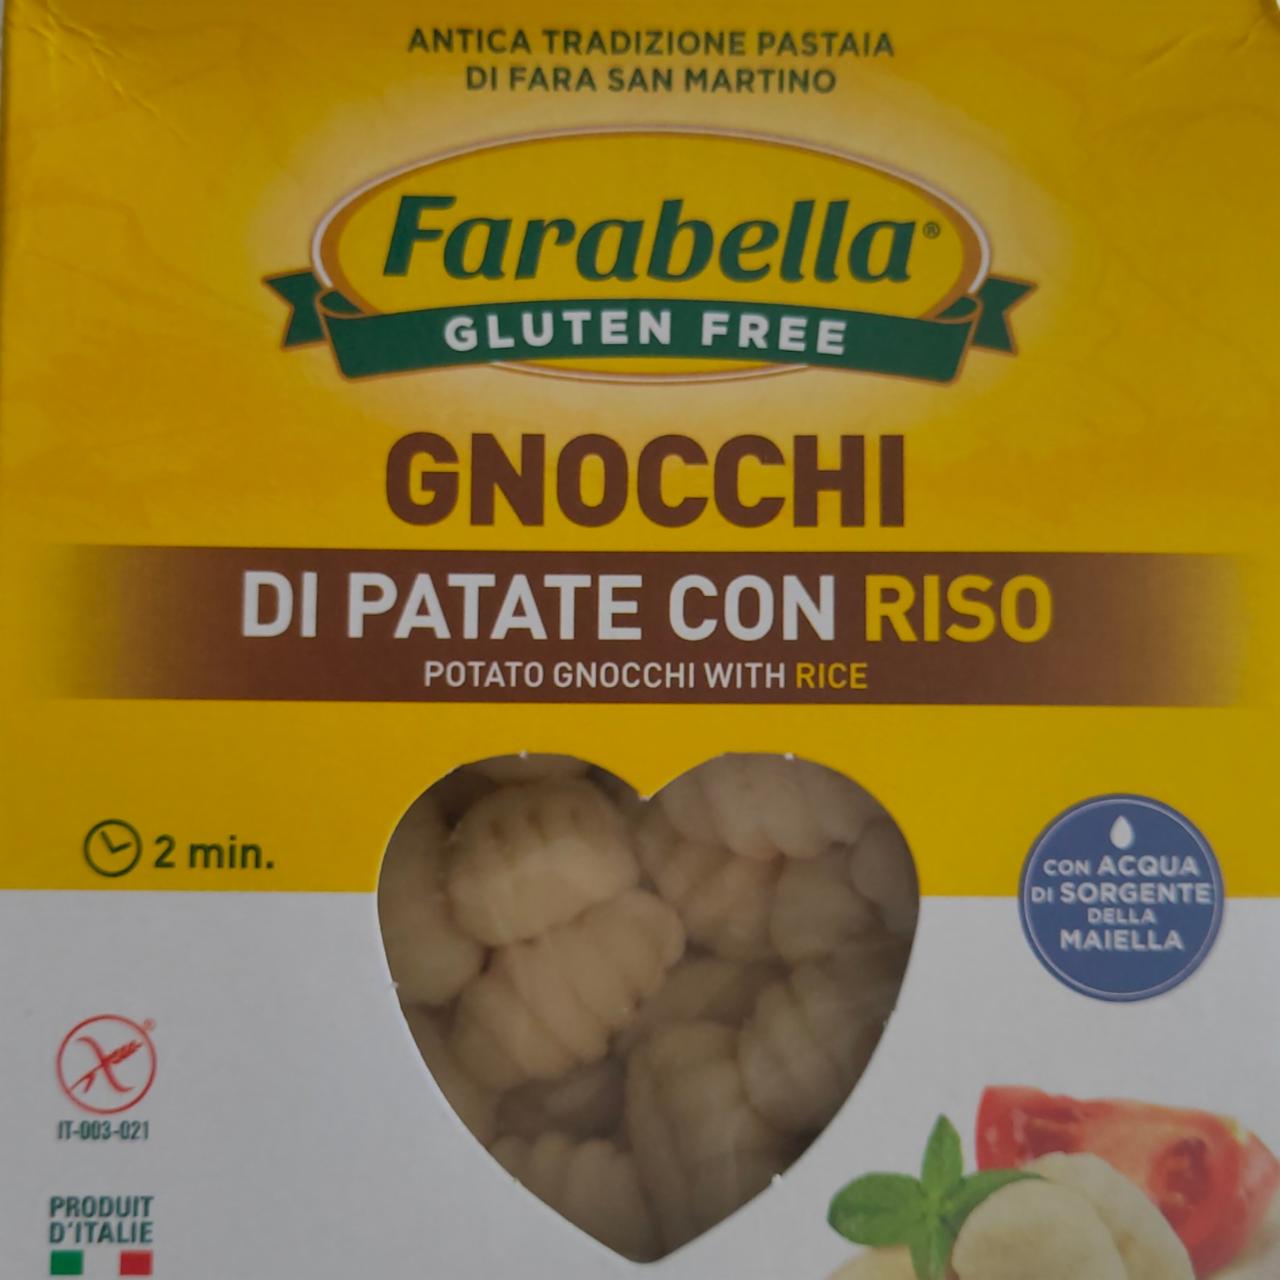 Fotografie - Gnocchi Di Patate Con Riso Farabella Gluten Free